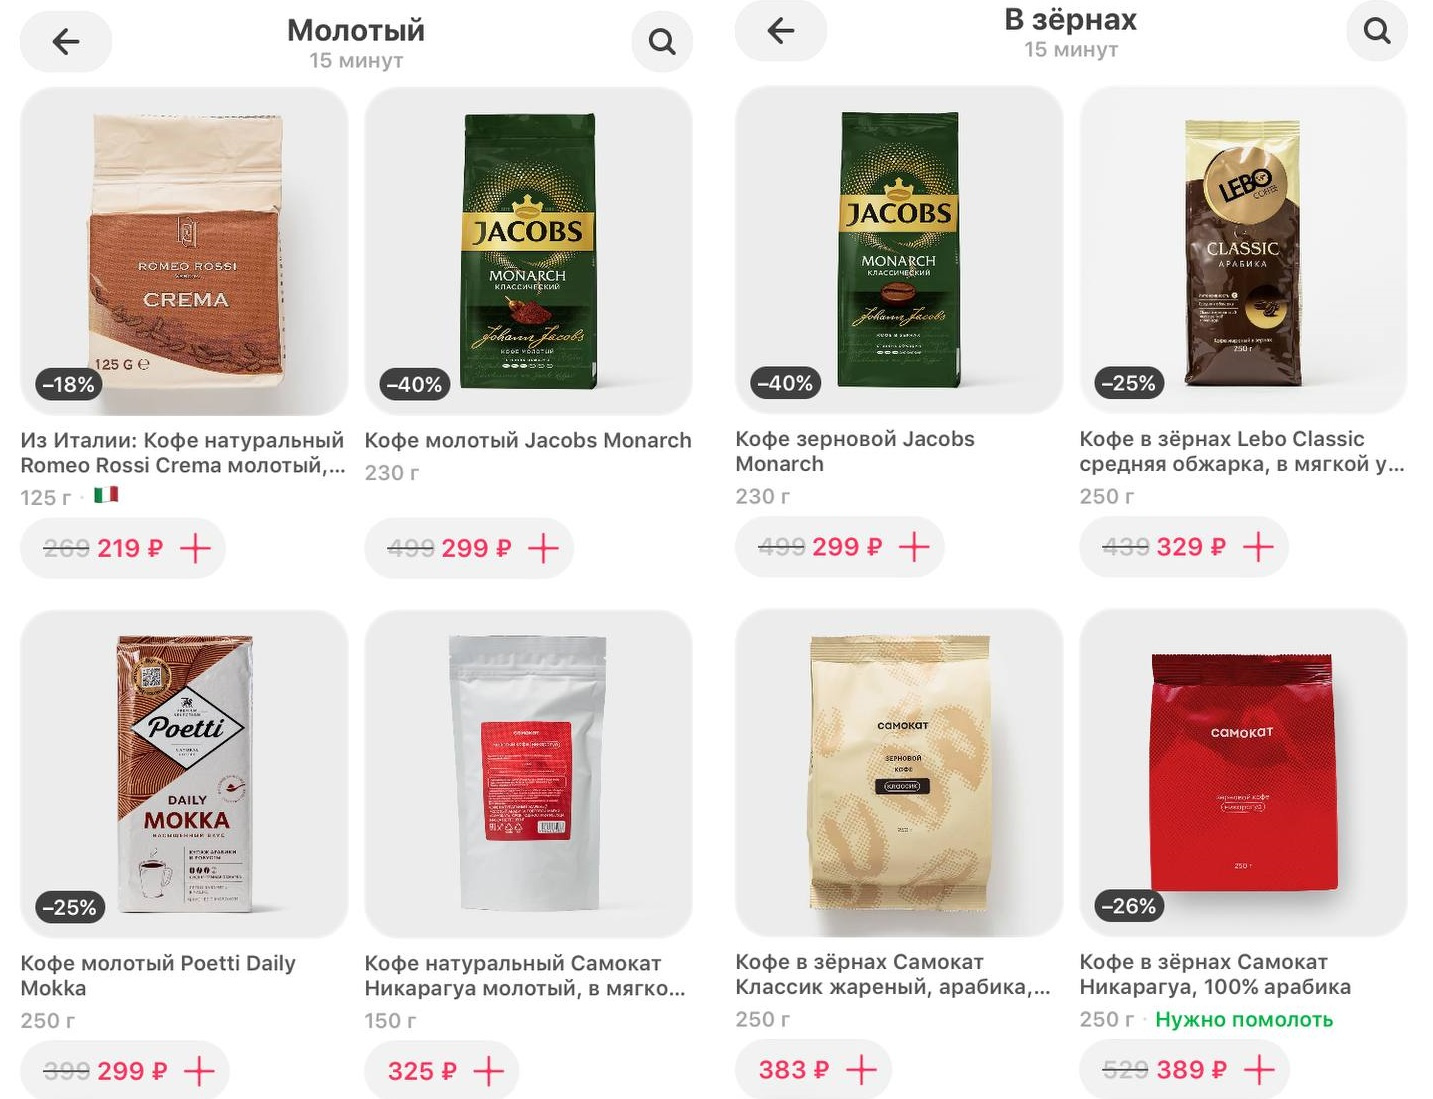 В «Самокате» есть кофе собственного бренда. По скидке цена довольно неплохая, но без нее уже грустнее — больше 500 рублей